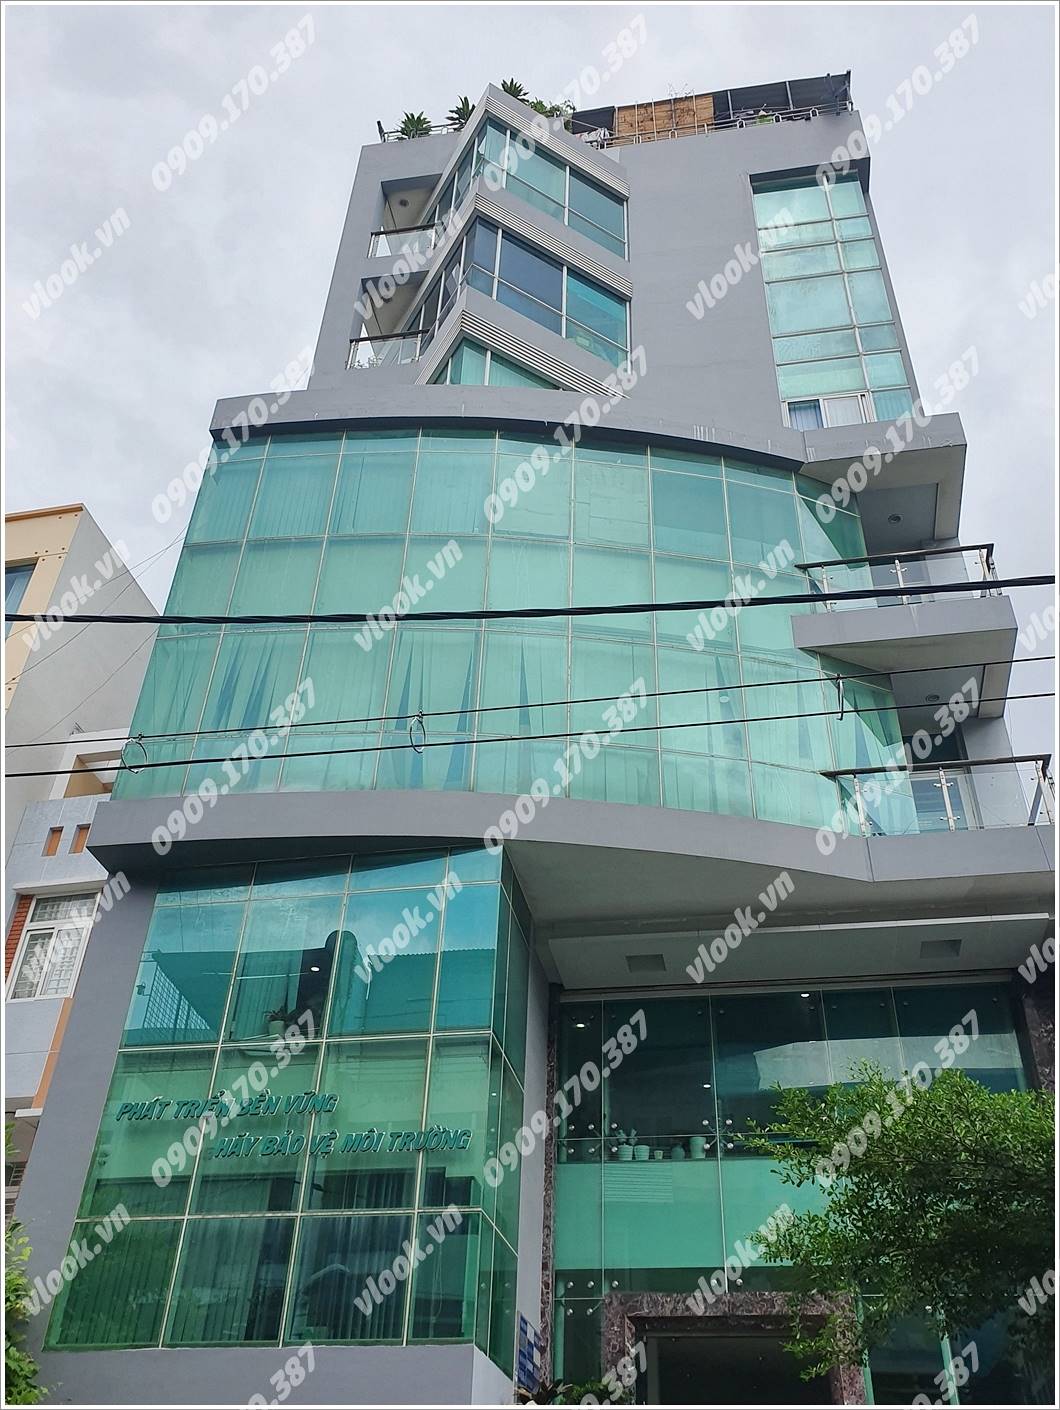 Cao ốc cho thuê văn phòng tòa nhà VTC Building, Đặng Thai Mai, Quận Phú Nhuận, TPHCM - vlook.vn